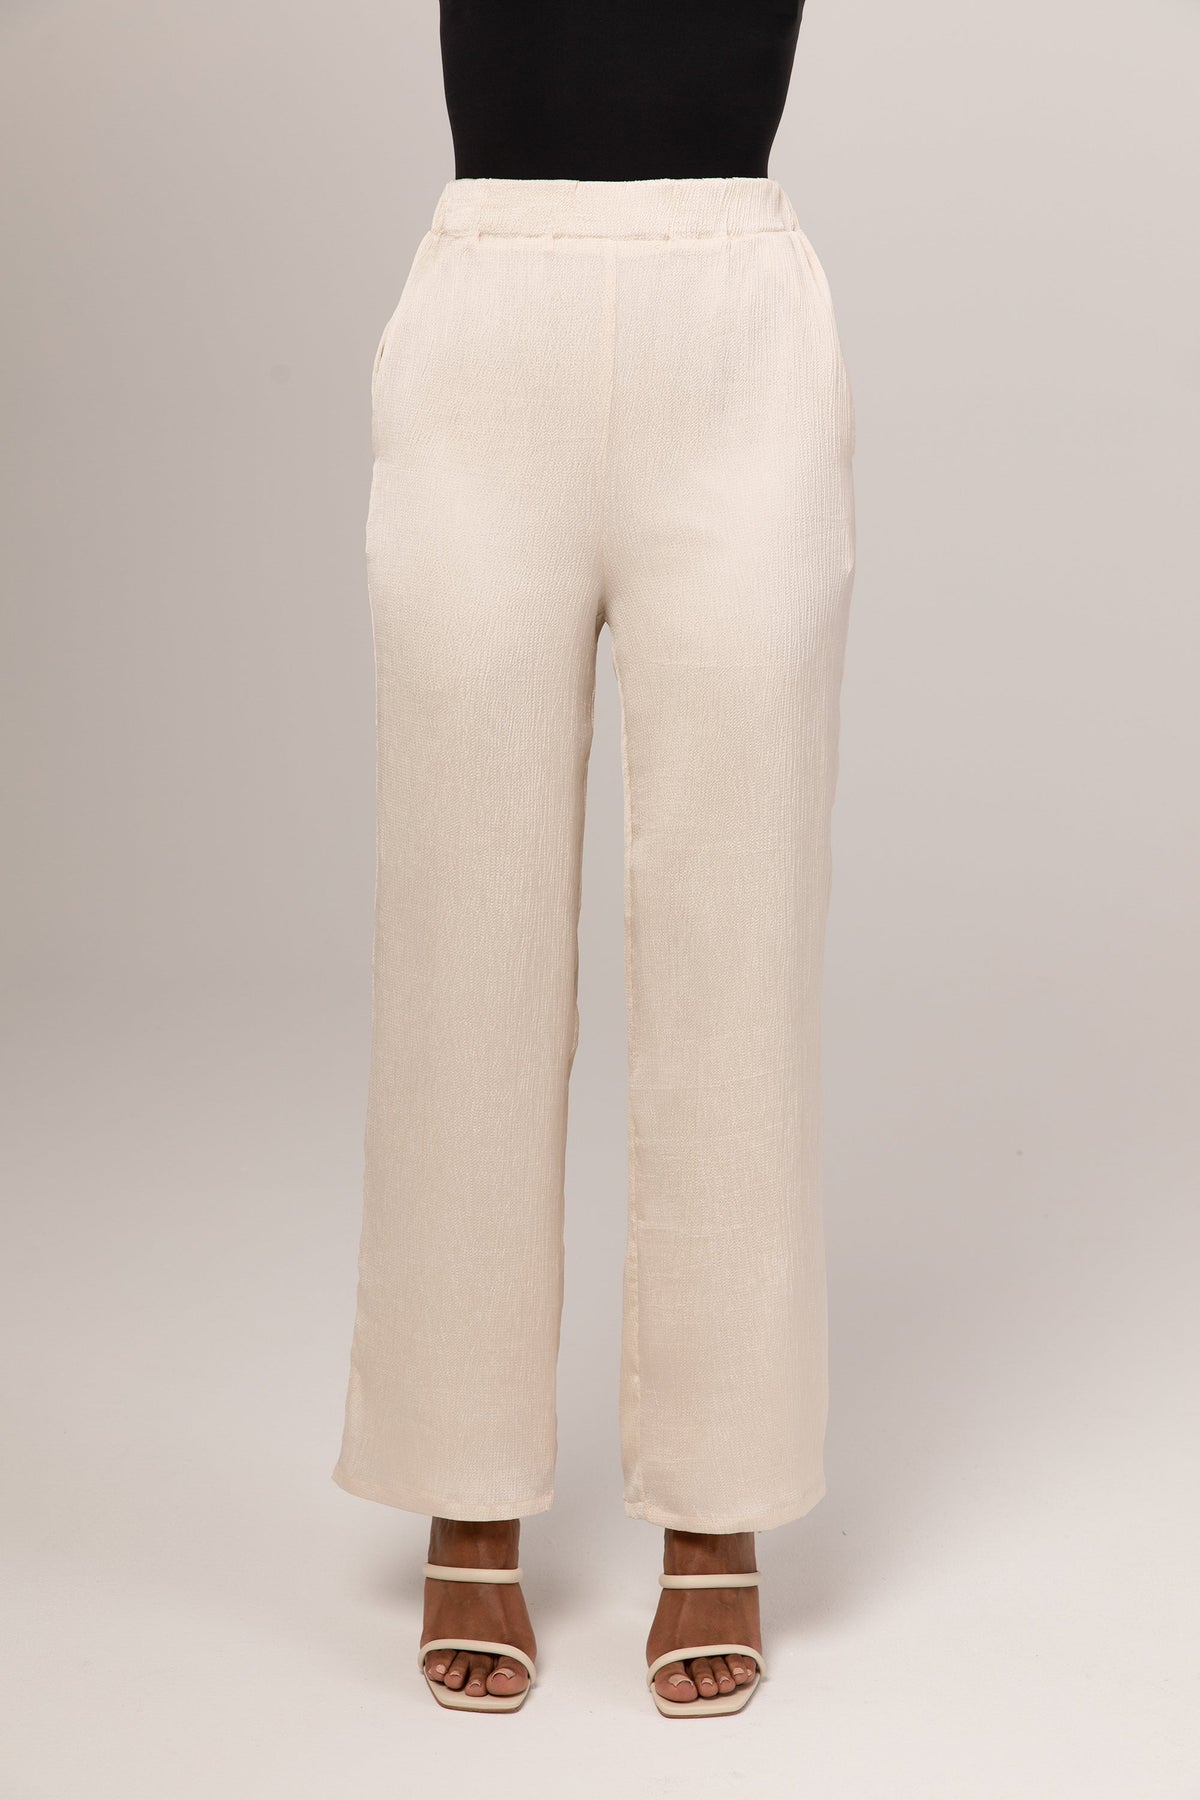 Katia Textured Wide Leg Pants - Ivory saigonodysseyhotel 